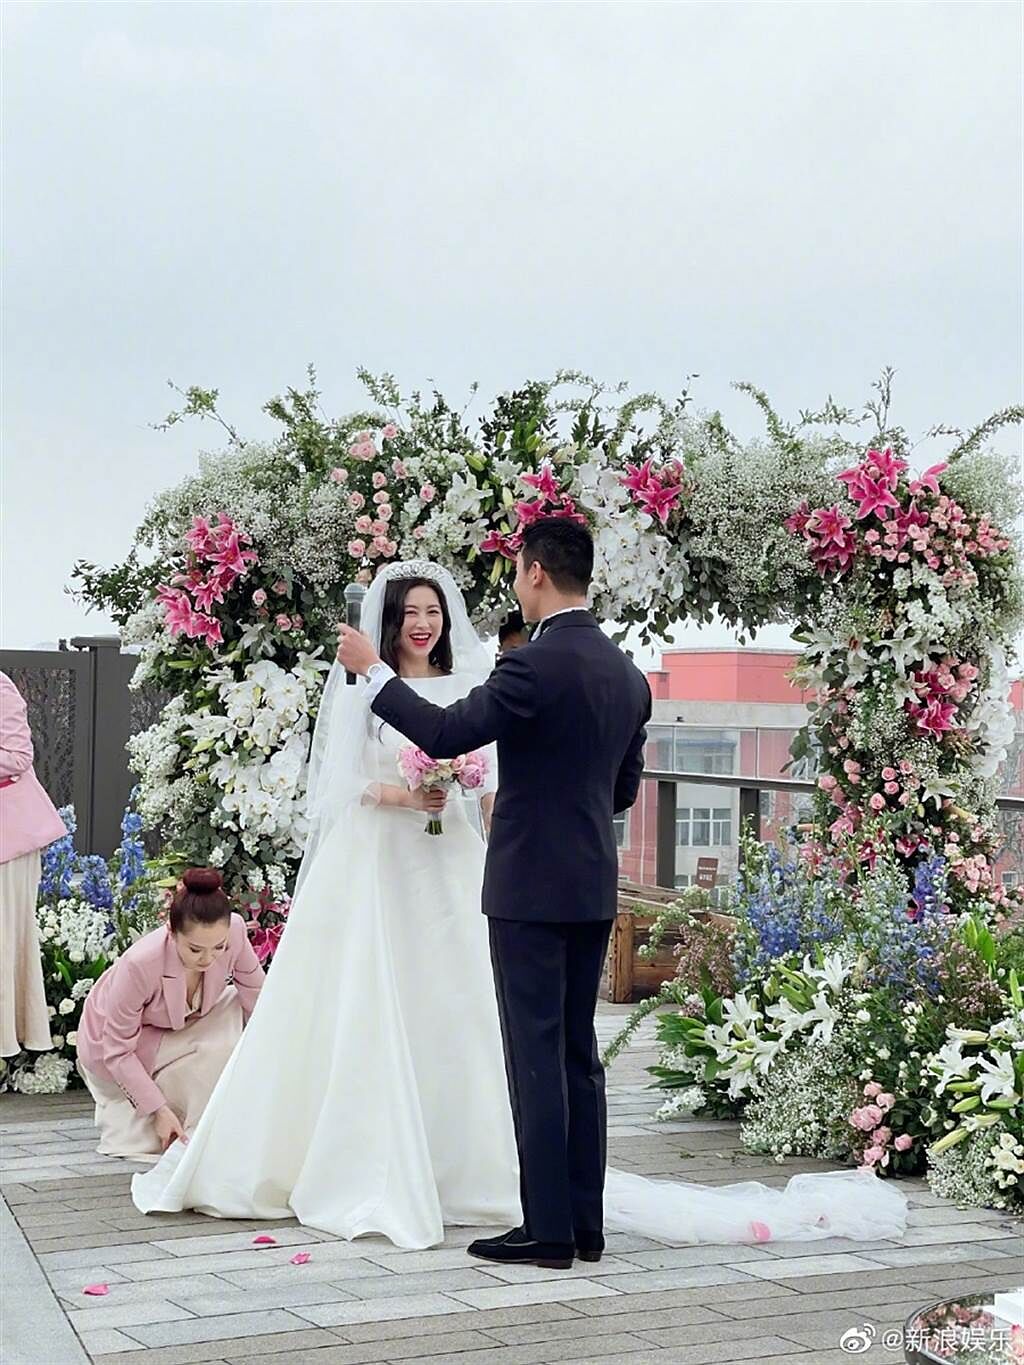 朱珠結婚照在微博瘋傳。(圖/ 摘自微博)